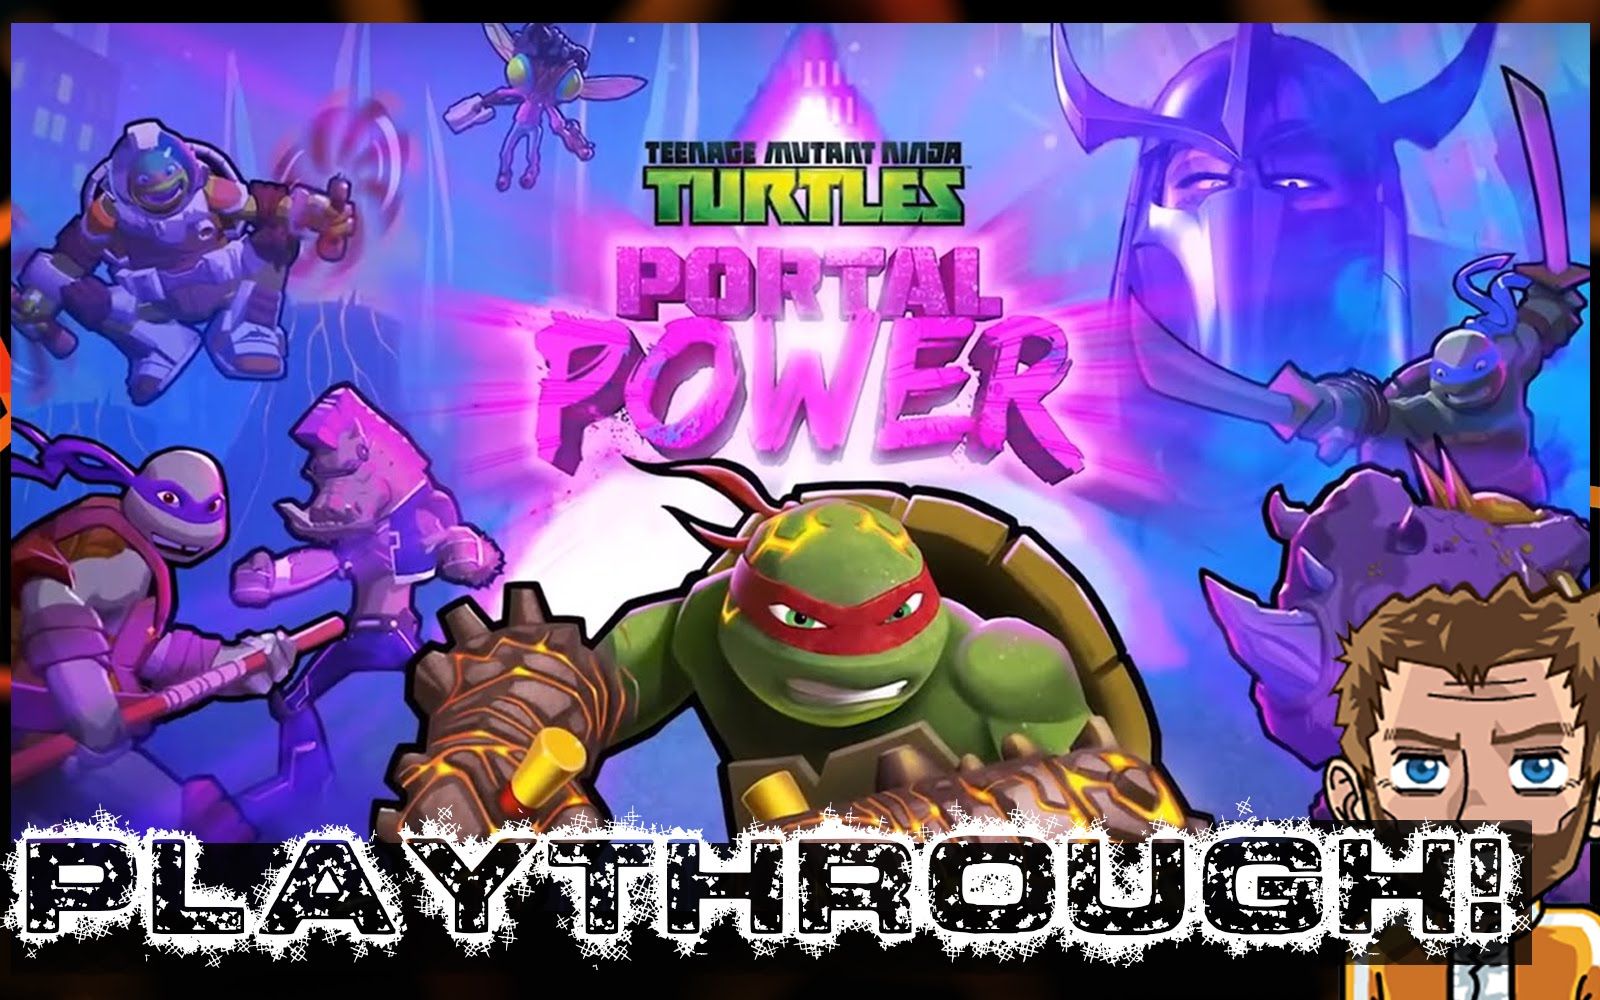 Teenage mutant ninja turtles: portal power (2017) 1#